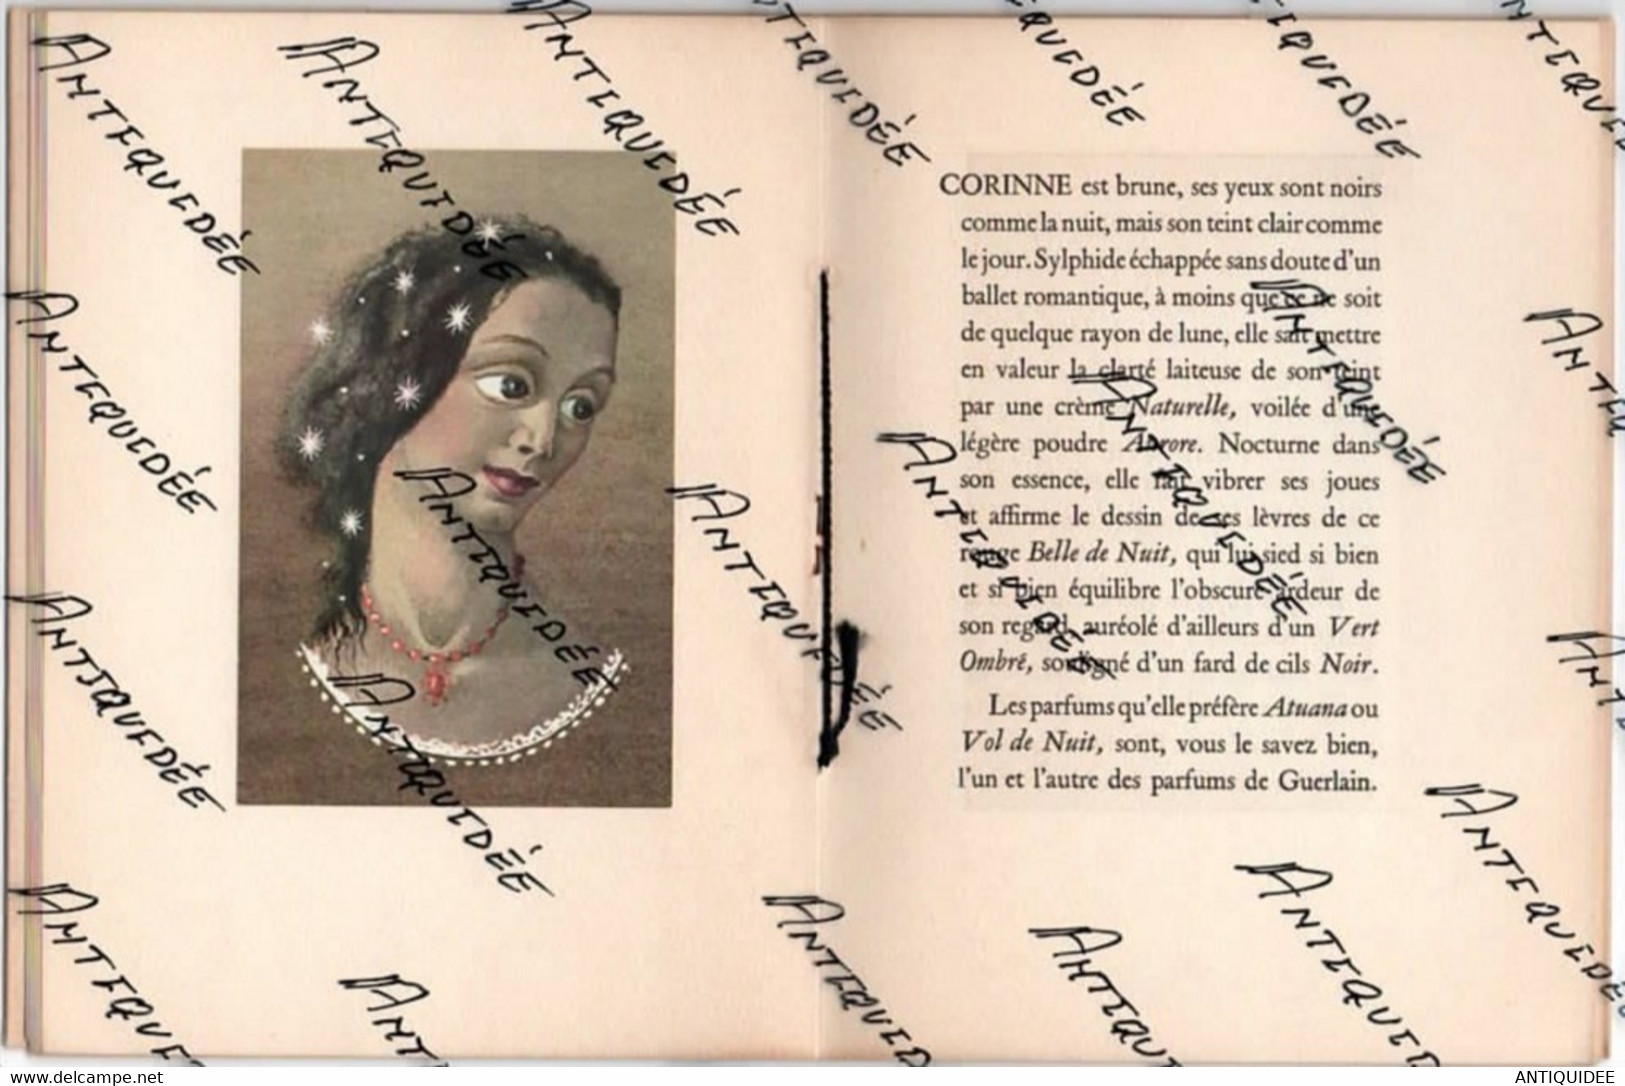 GUERLAIN - CASSANDRE - Edition 1953 - Exemplaire Numéroté Sur Vélin D'Arches - - Books